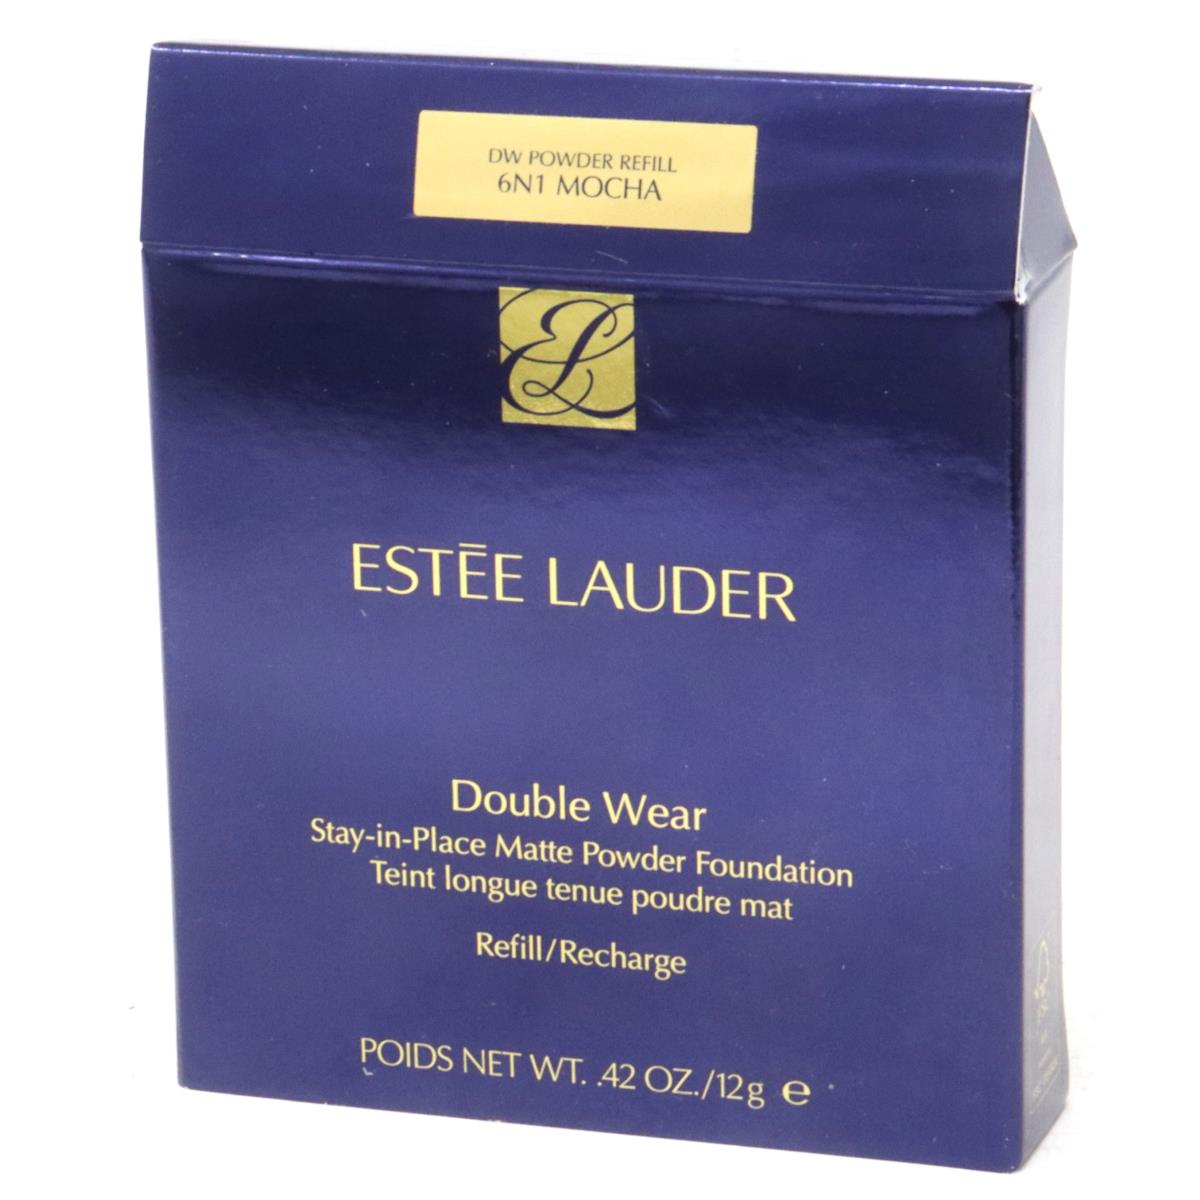 Estee Lauder Double Wear Stay-in-place Powder Foundation 0.42oz 6N1 Mocha